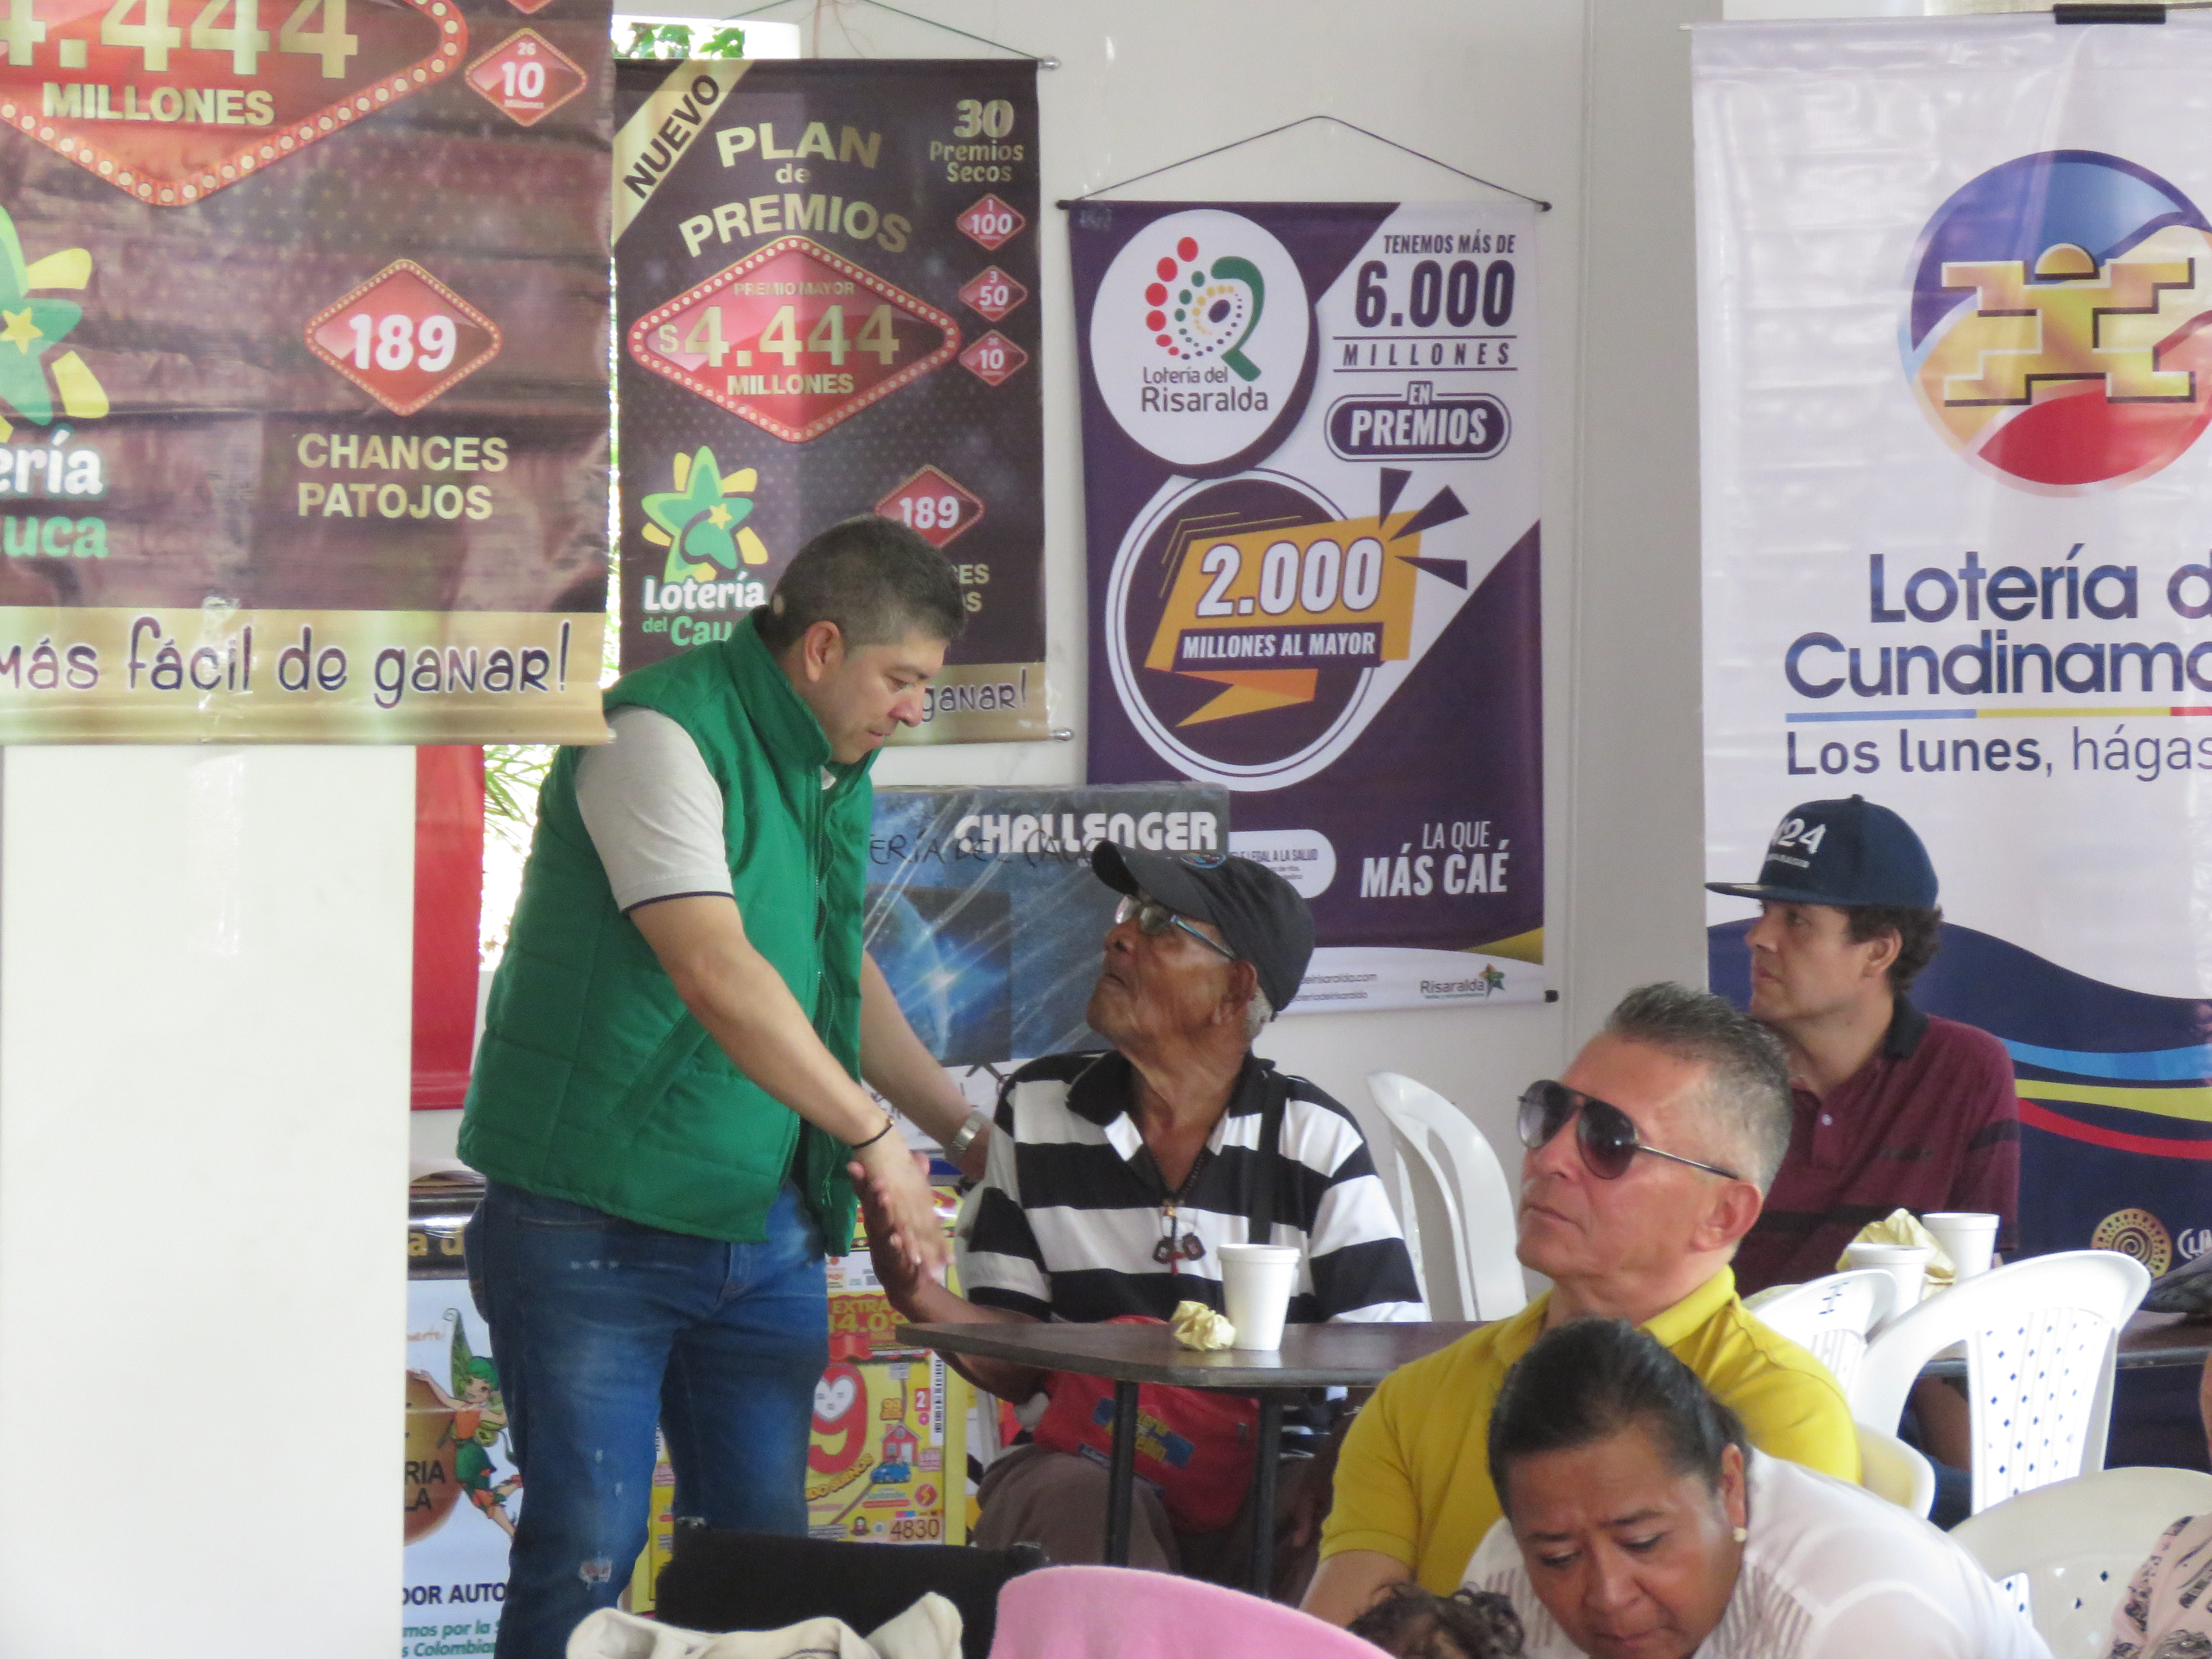 Durante la celebración del día del Lotero en Buga, Valle del Cauca, la Lotería del Risaralda anuncio su nuevo plan de premios